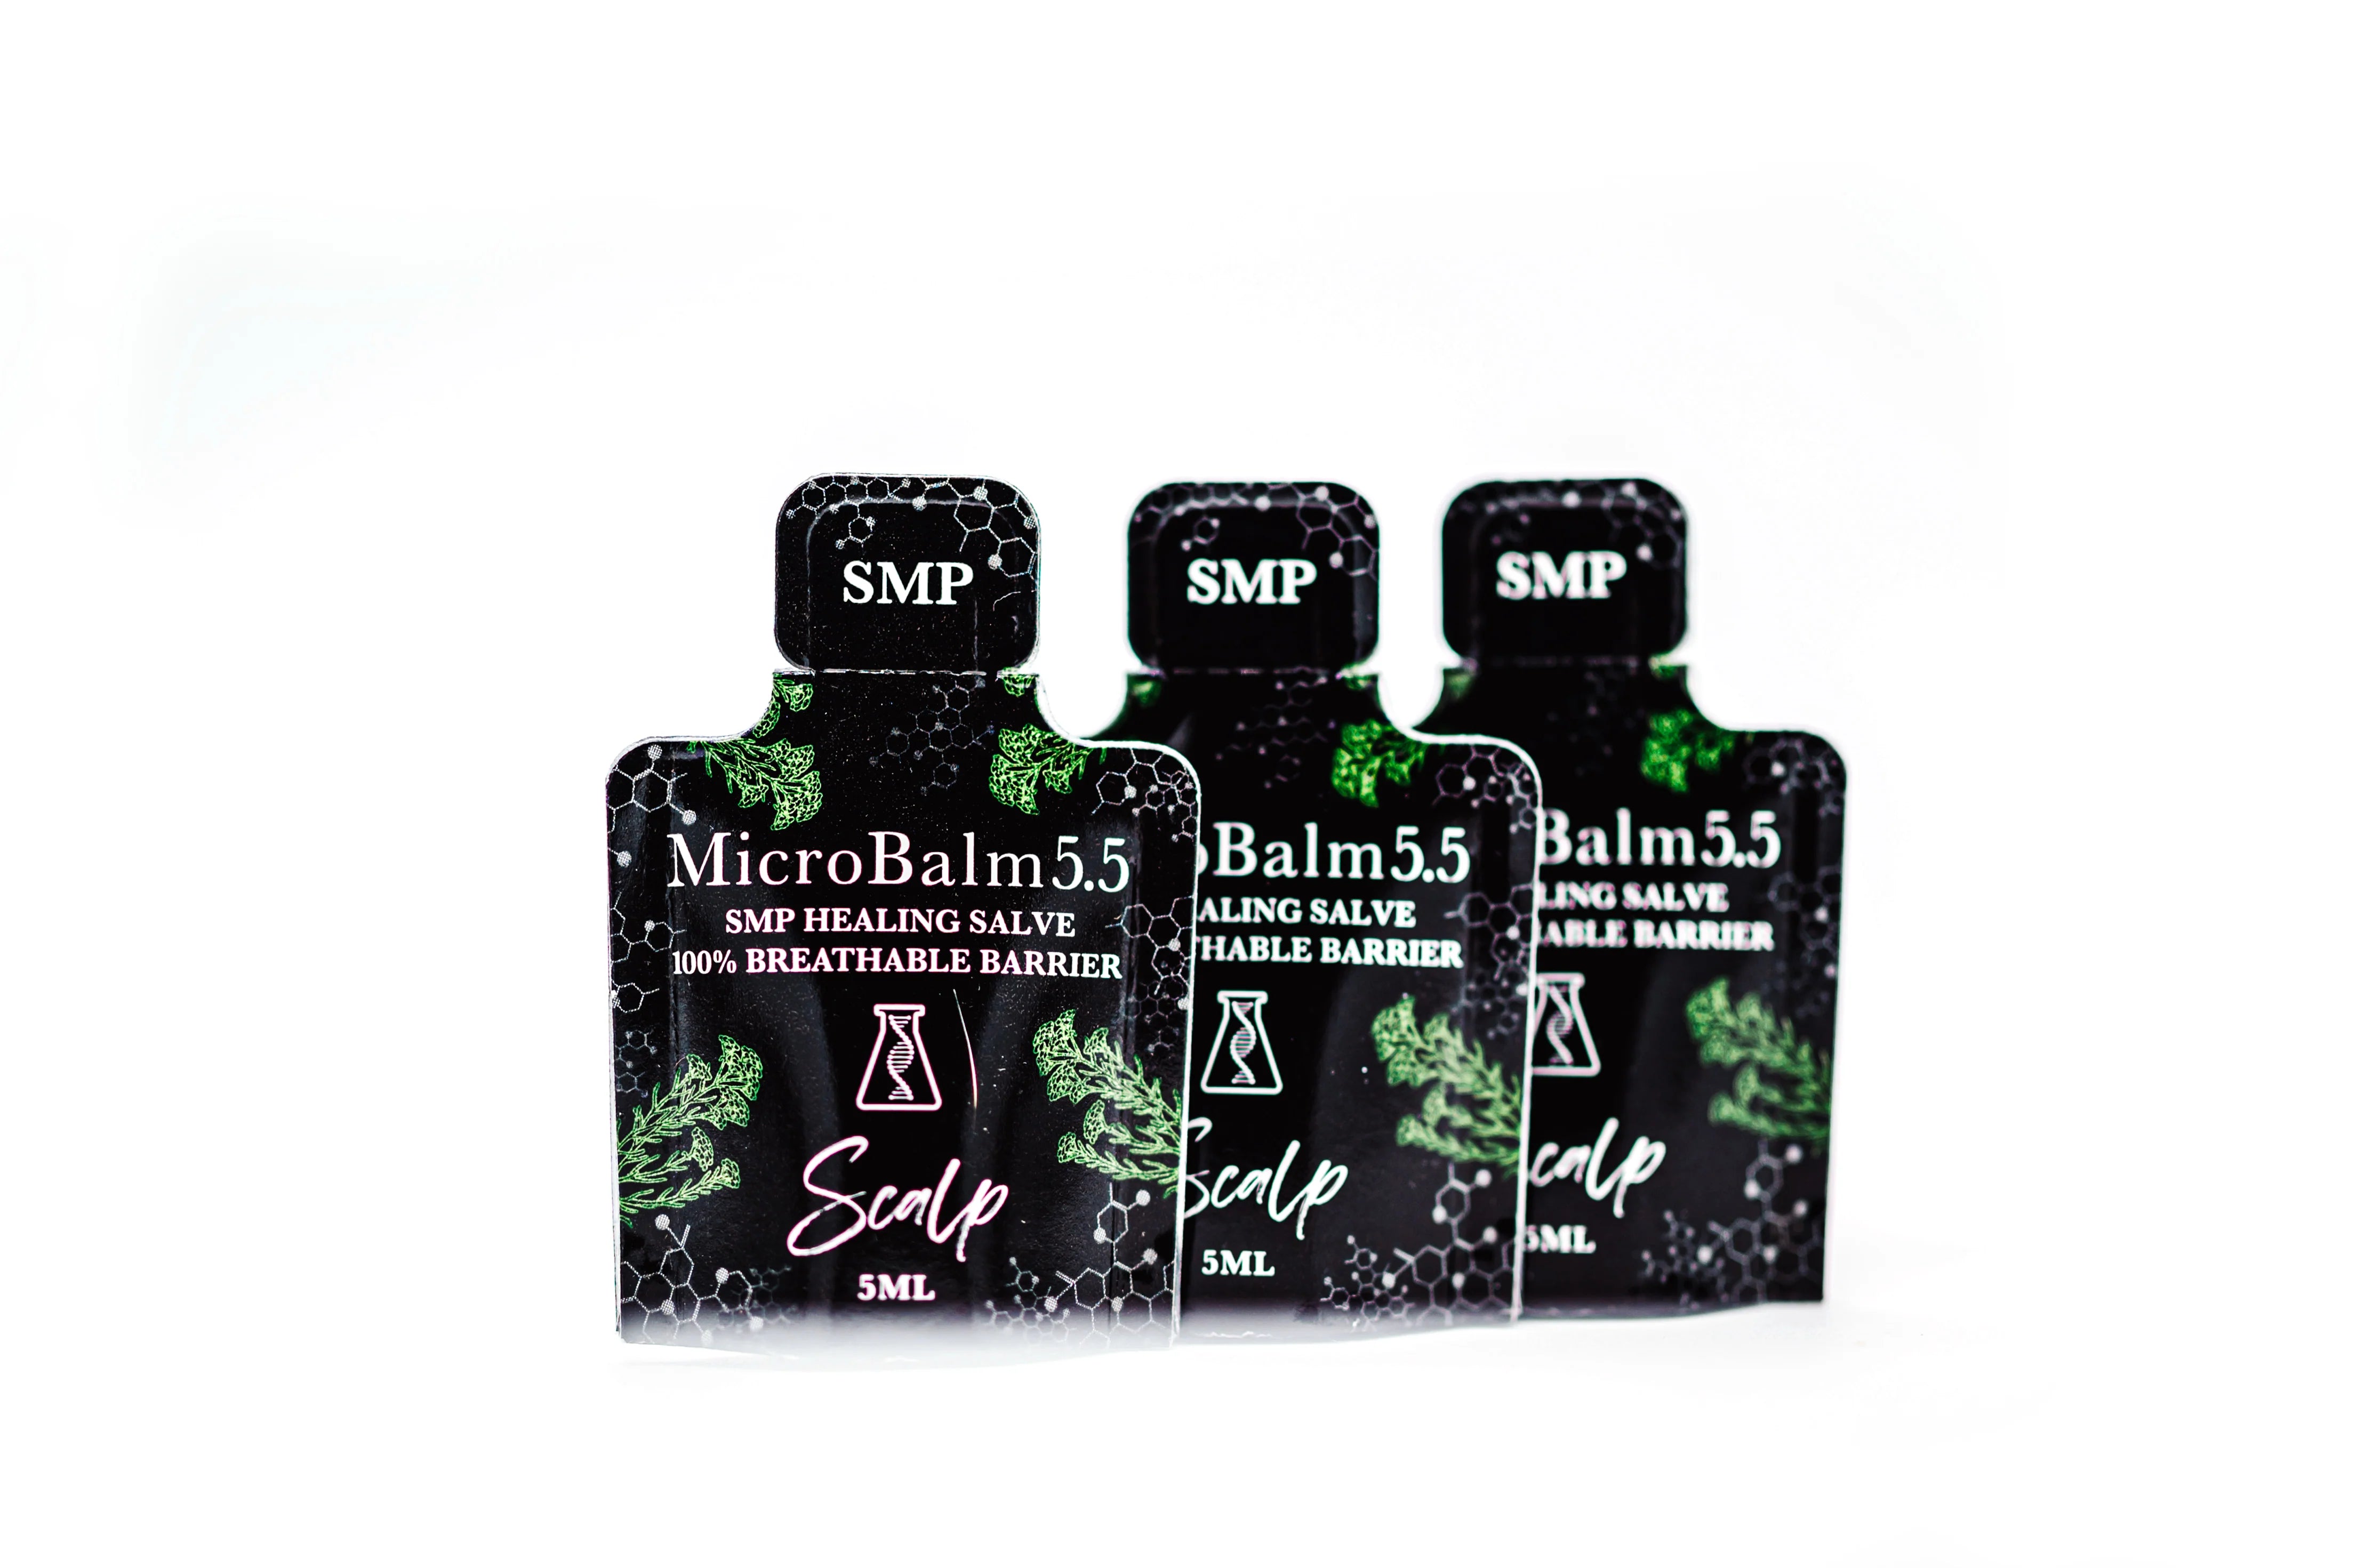 MEMBRANE - MICROBALM 5.5 SMP HEALING SALVE (Pillow Packs)